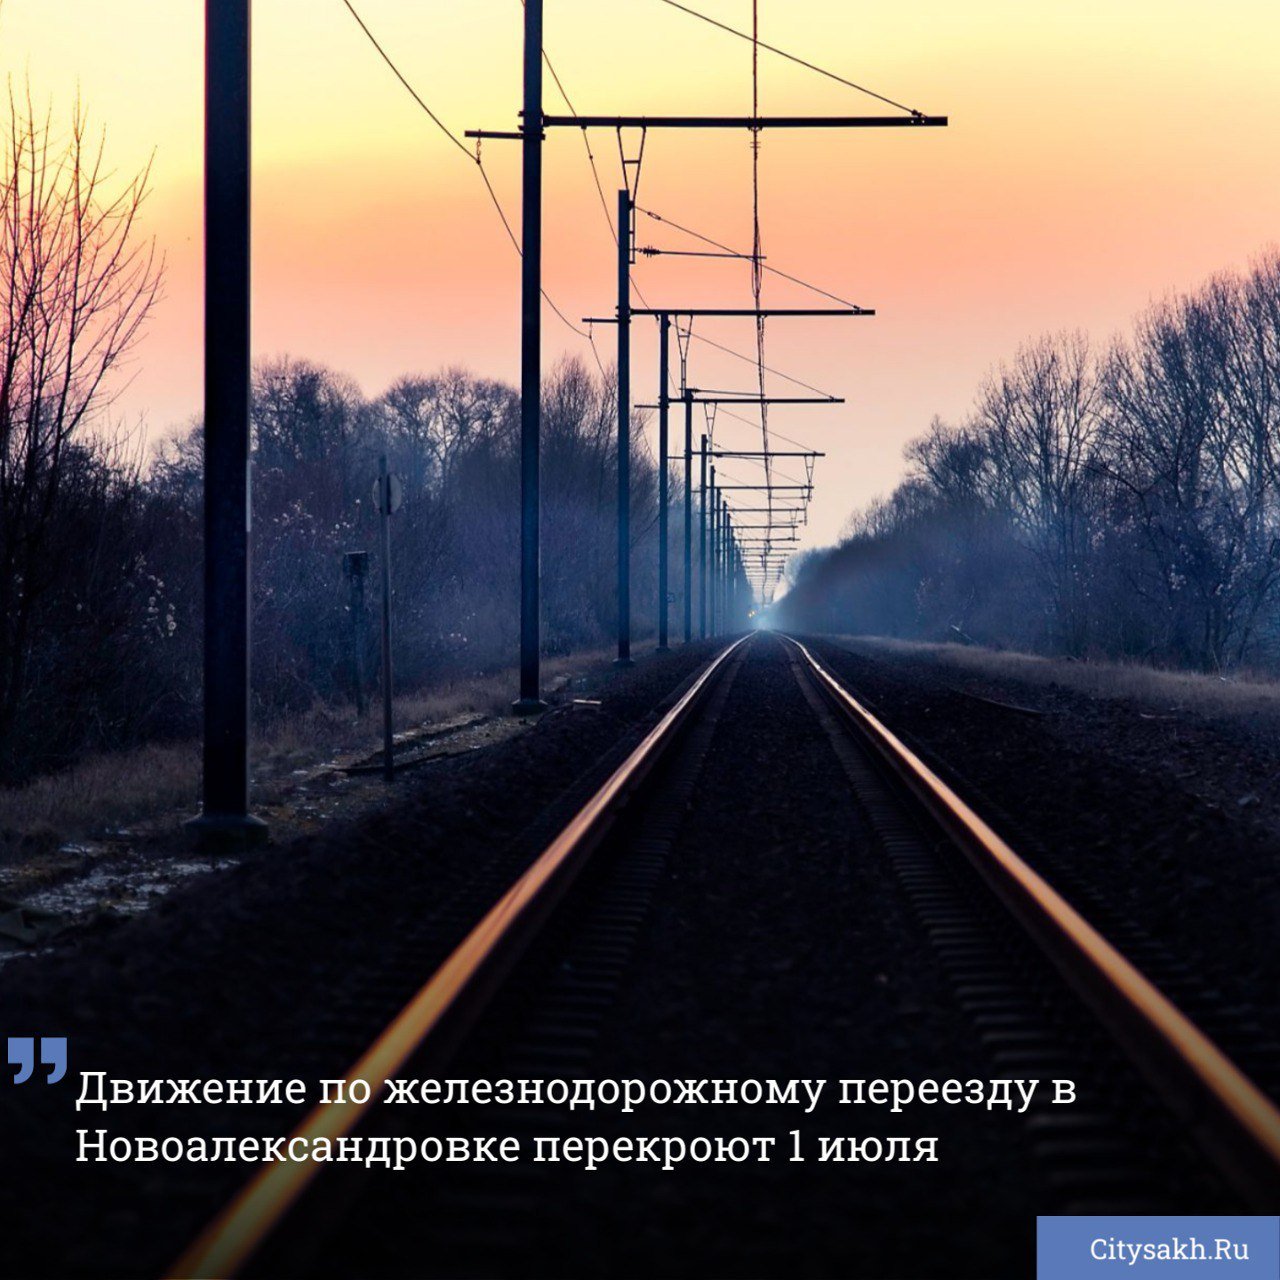 Руководство ДВЖД уведомило сахалинцев о частичном перекрытии автомобильного движения на одном из железнодорожных переездов в планировочном районе Ново-Александровск.